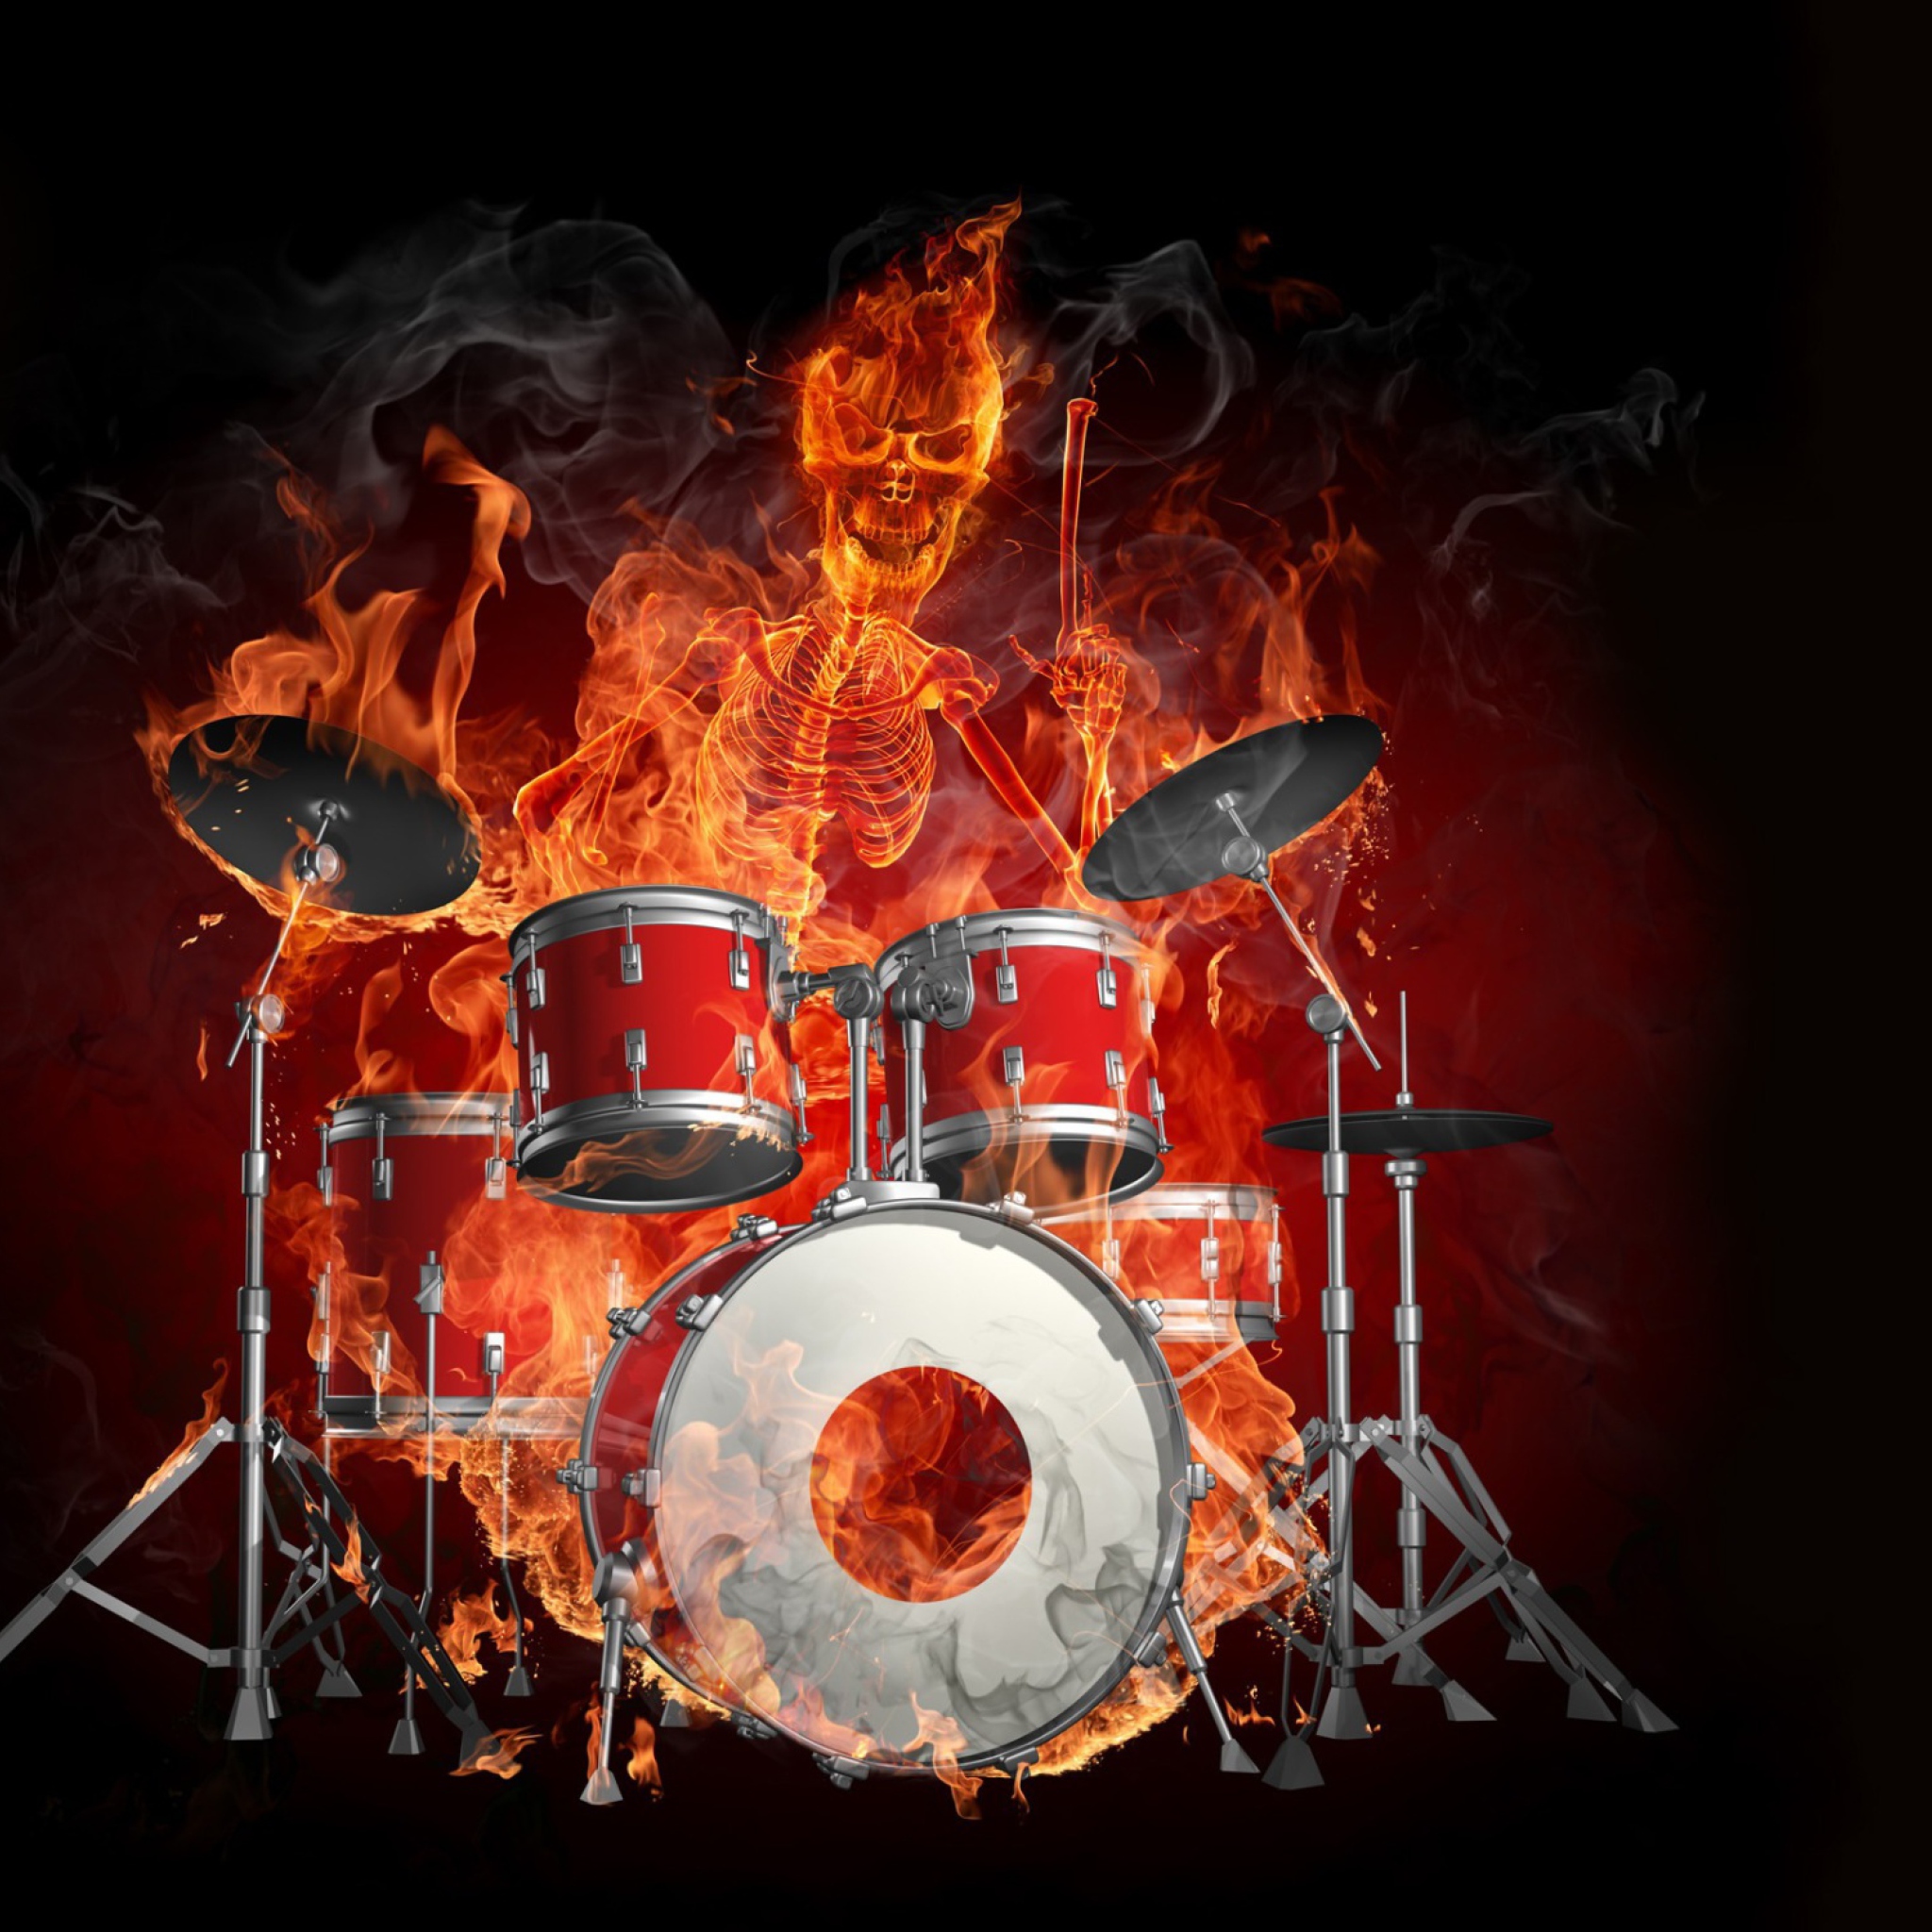 Das Fire Drummer Wallpaper 2048x2048